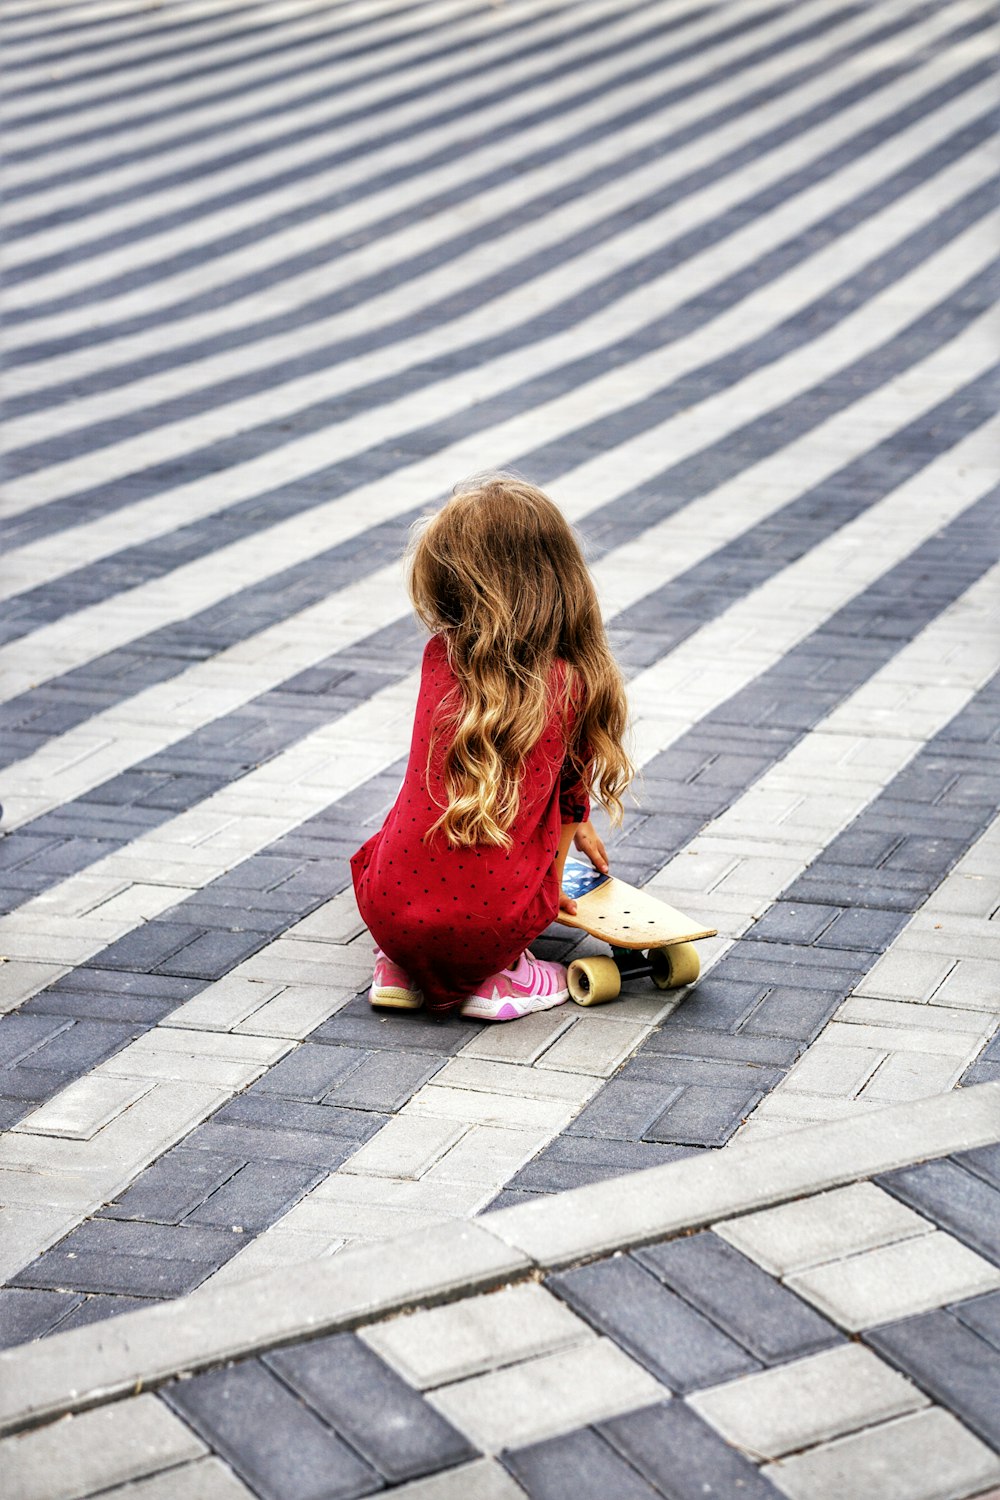 Una niña sentada en el suelo con una patineta